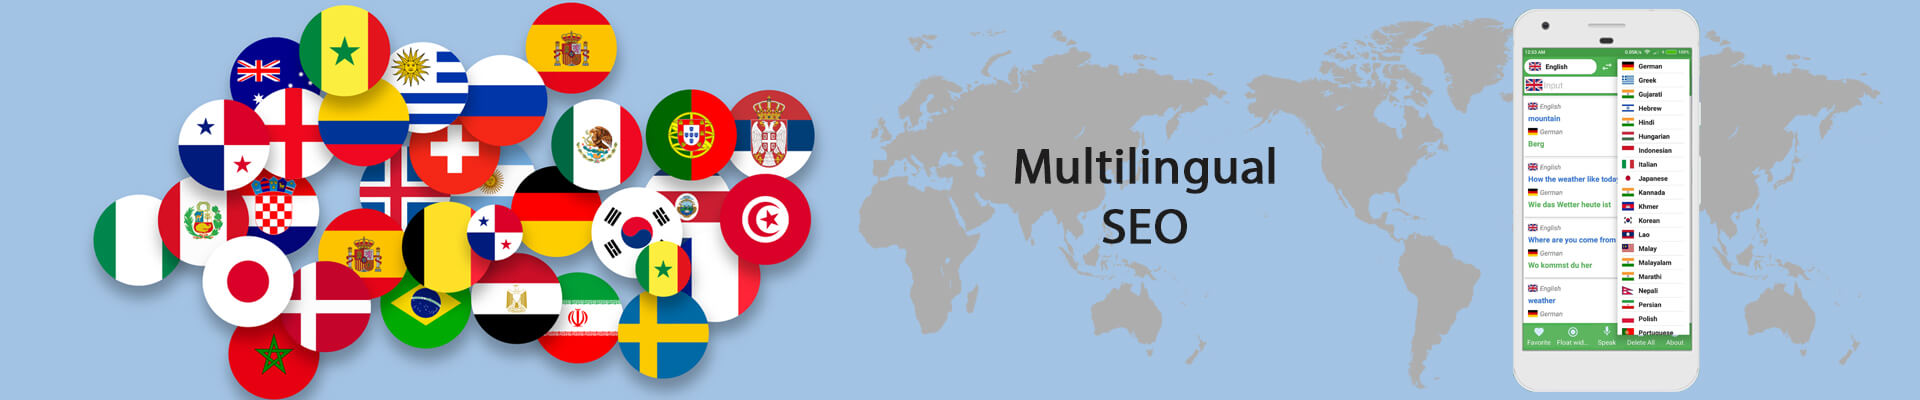 multi lingual seo services in USA